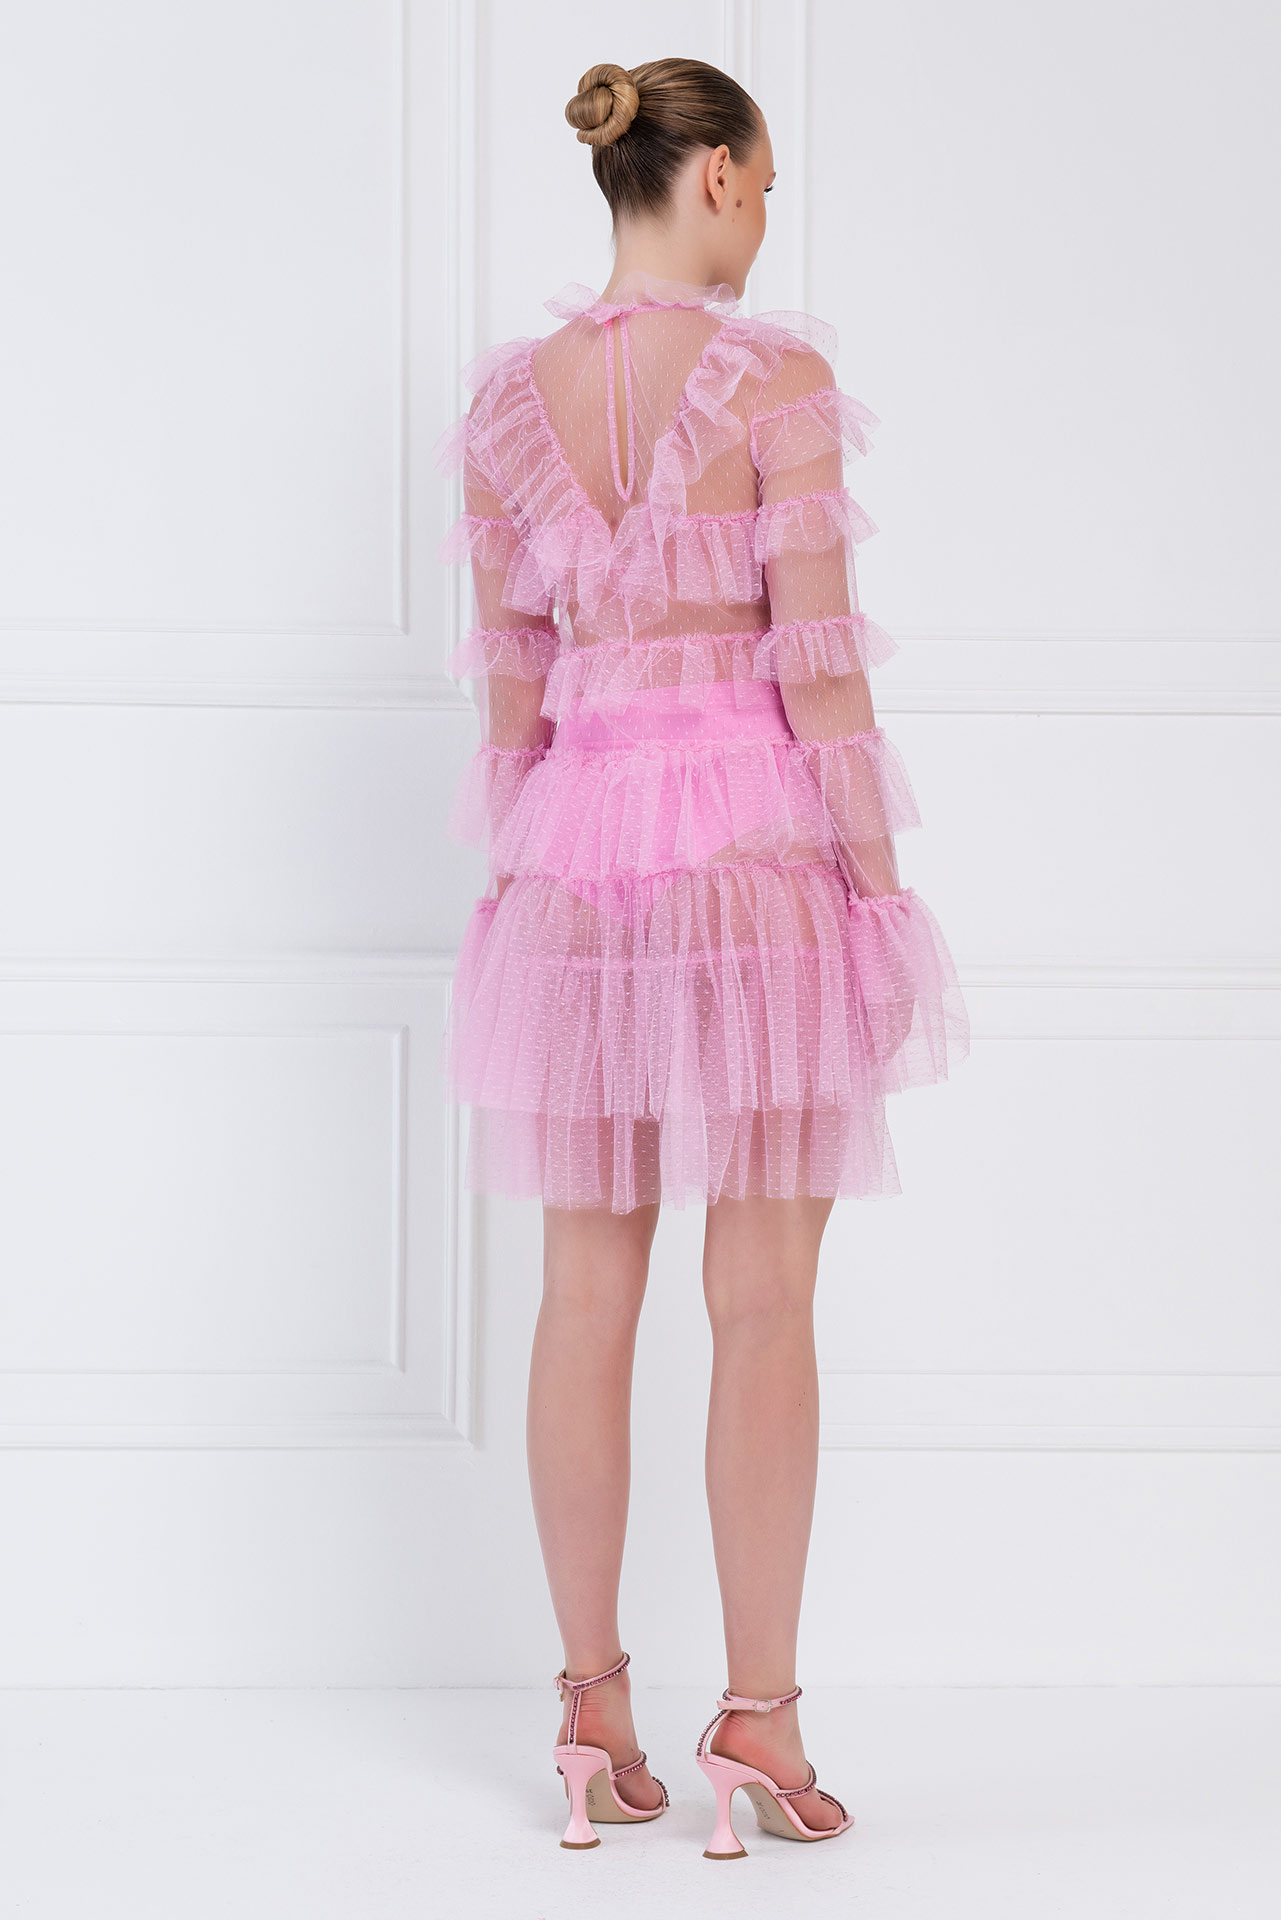 Прозрачное Платье с Рюшами Pink Фатиновое Мини-Платье